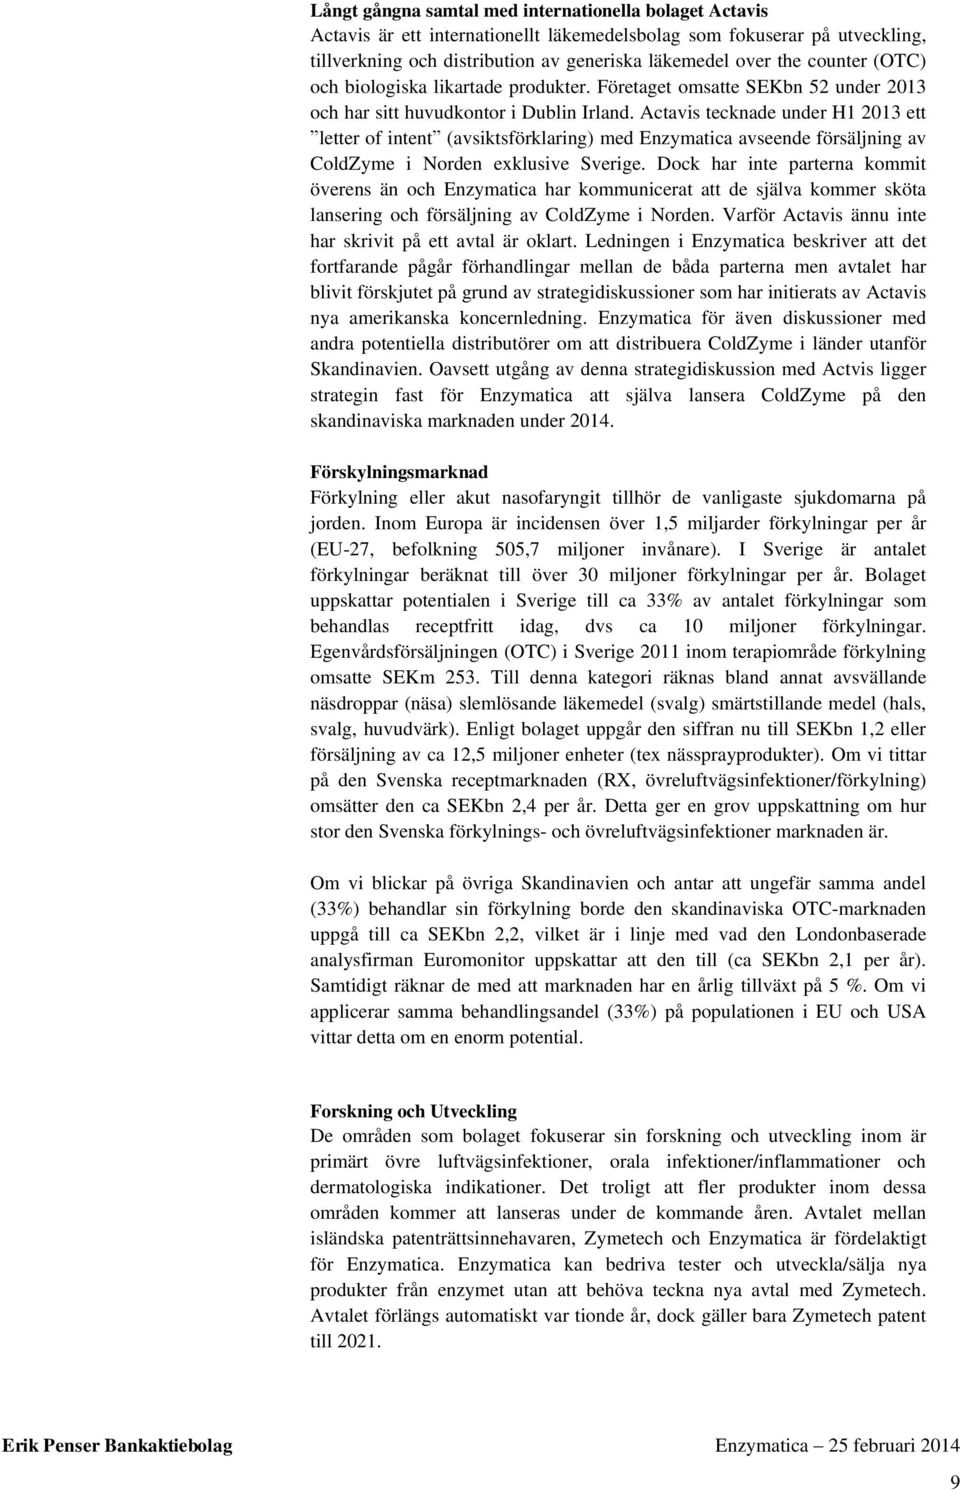 Actavis tecknade under H1 213 ett letter of intent (avsiktsförklaring) med Enzymatica avseende försäljning av ColdZyme i Norden exklusive Sverige.